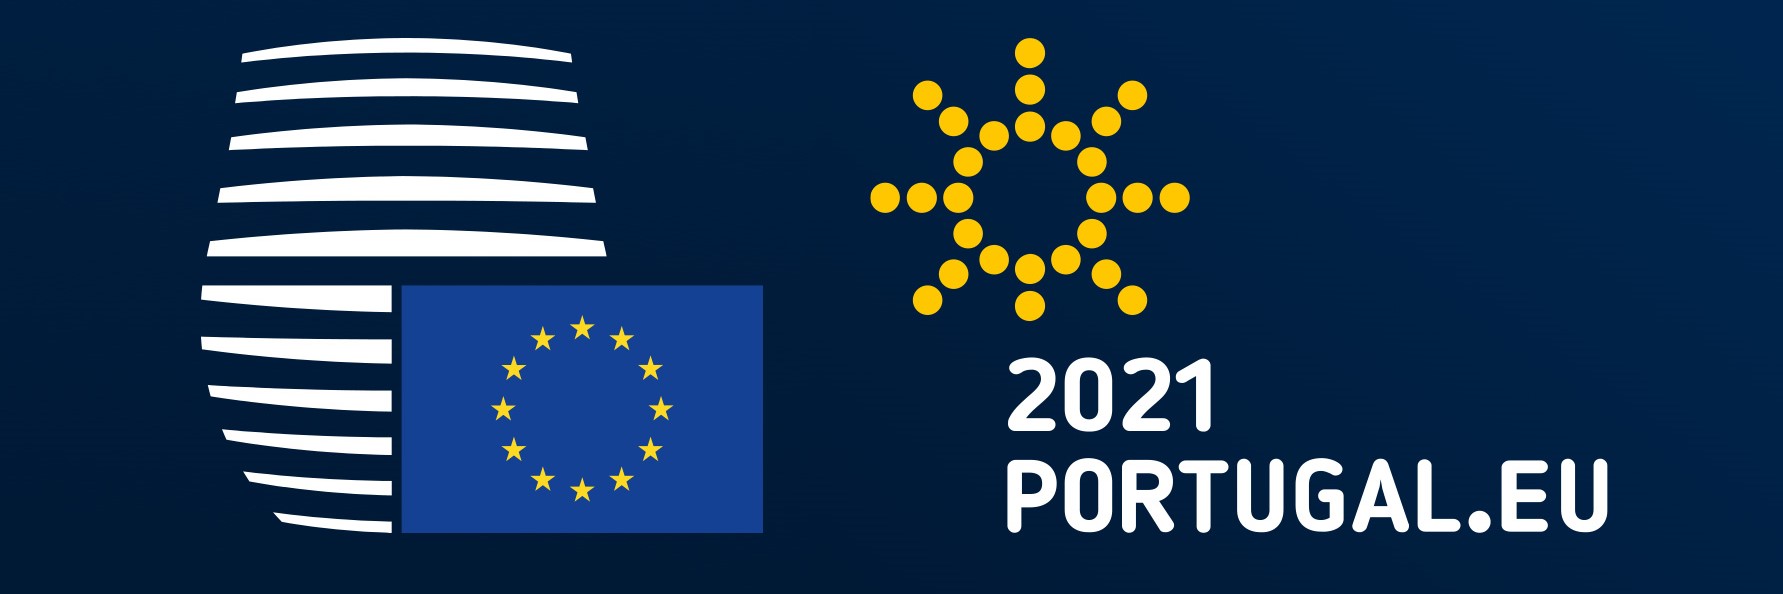 Πορτογαλική Προεδρία του Συμβουλίου της Ευρωπαϊκής Ένωσης: 1η Ιανουαρίου – 30 Ιουνίου 2021